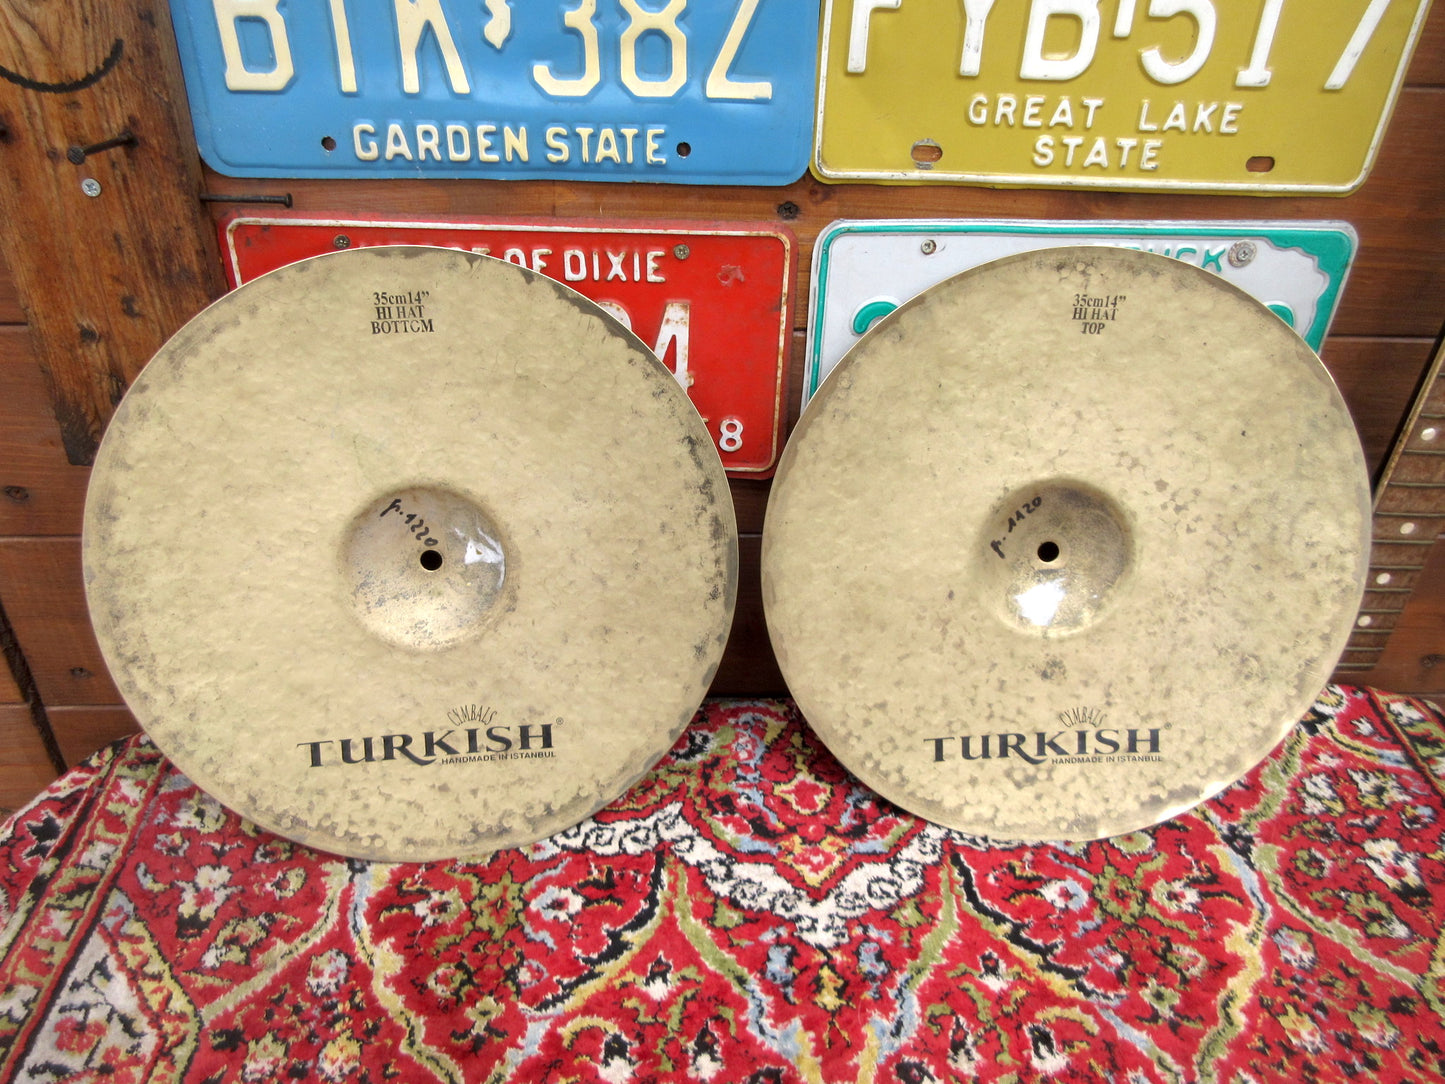 TURKISH Golden Legend 14” Hi Hat, used.